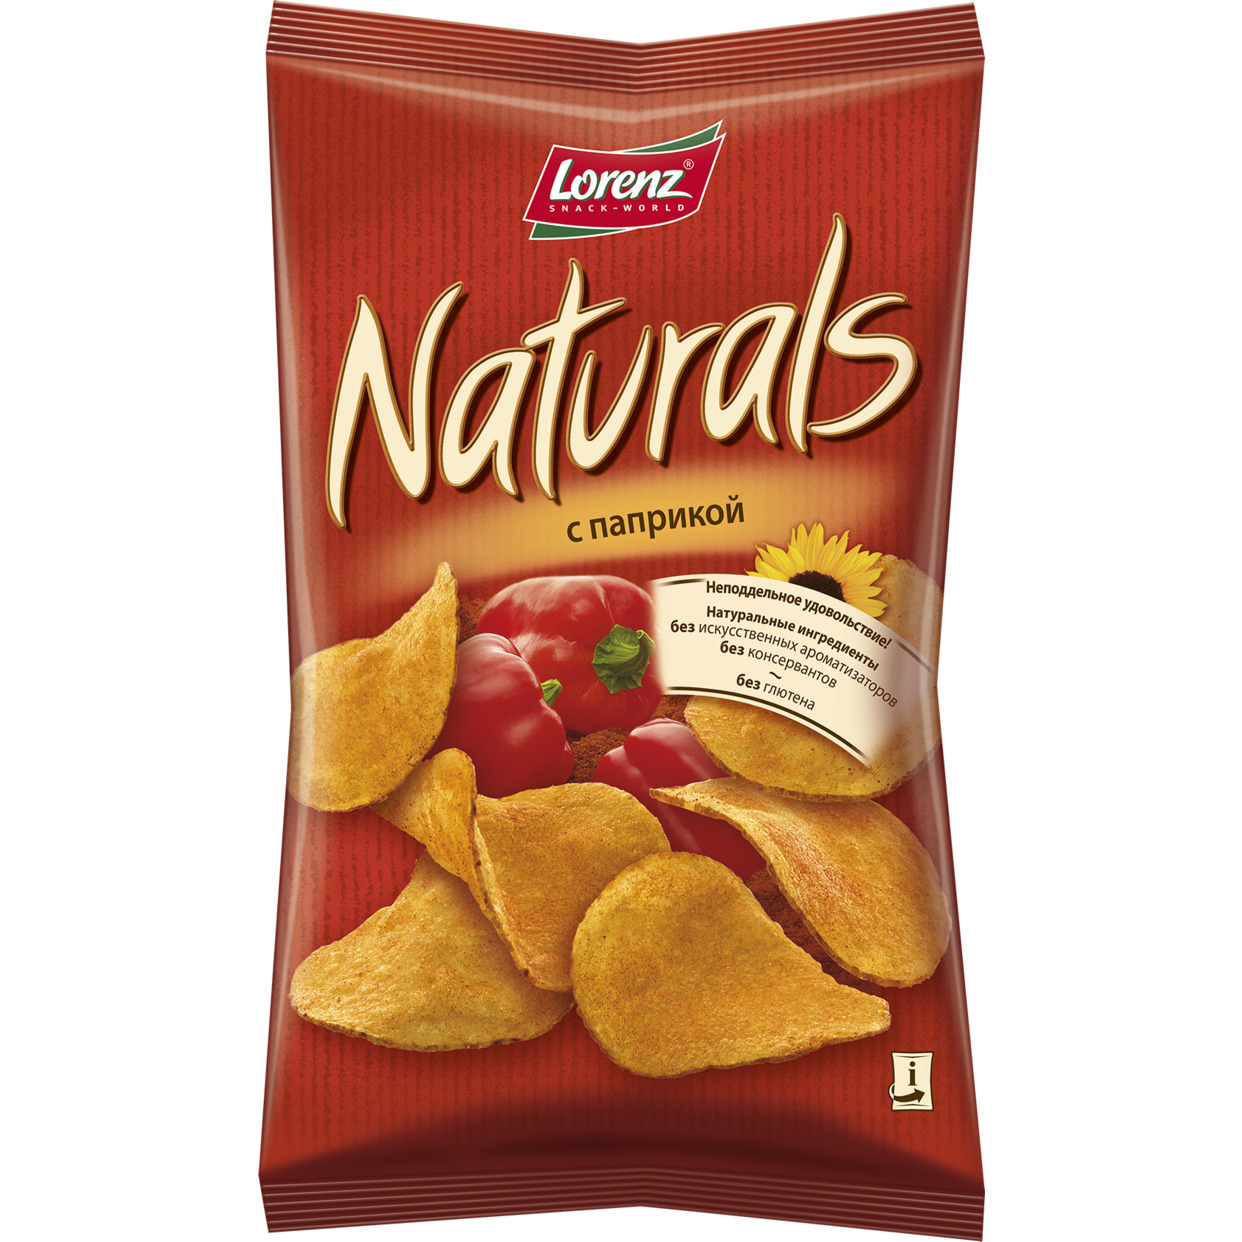 Акция в Пятерочке на Картофельные чипсы “Naturals” с паприкой, 100 гр.